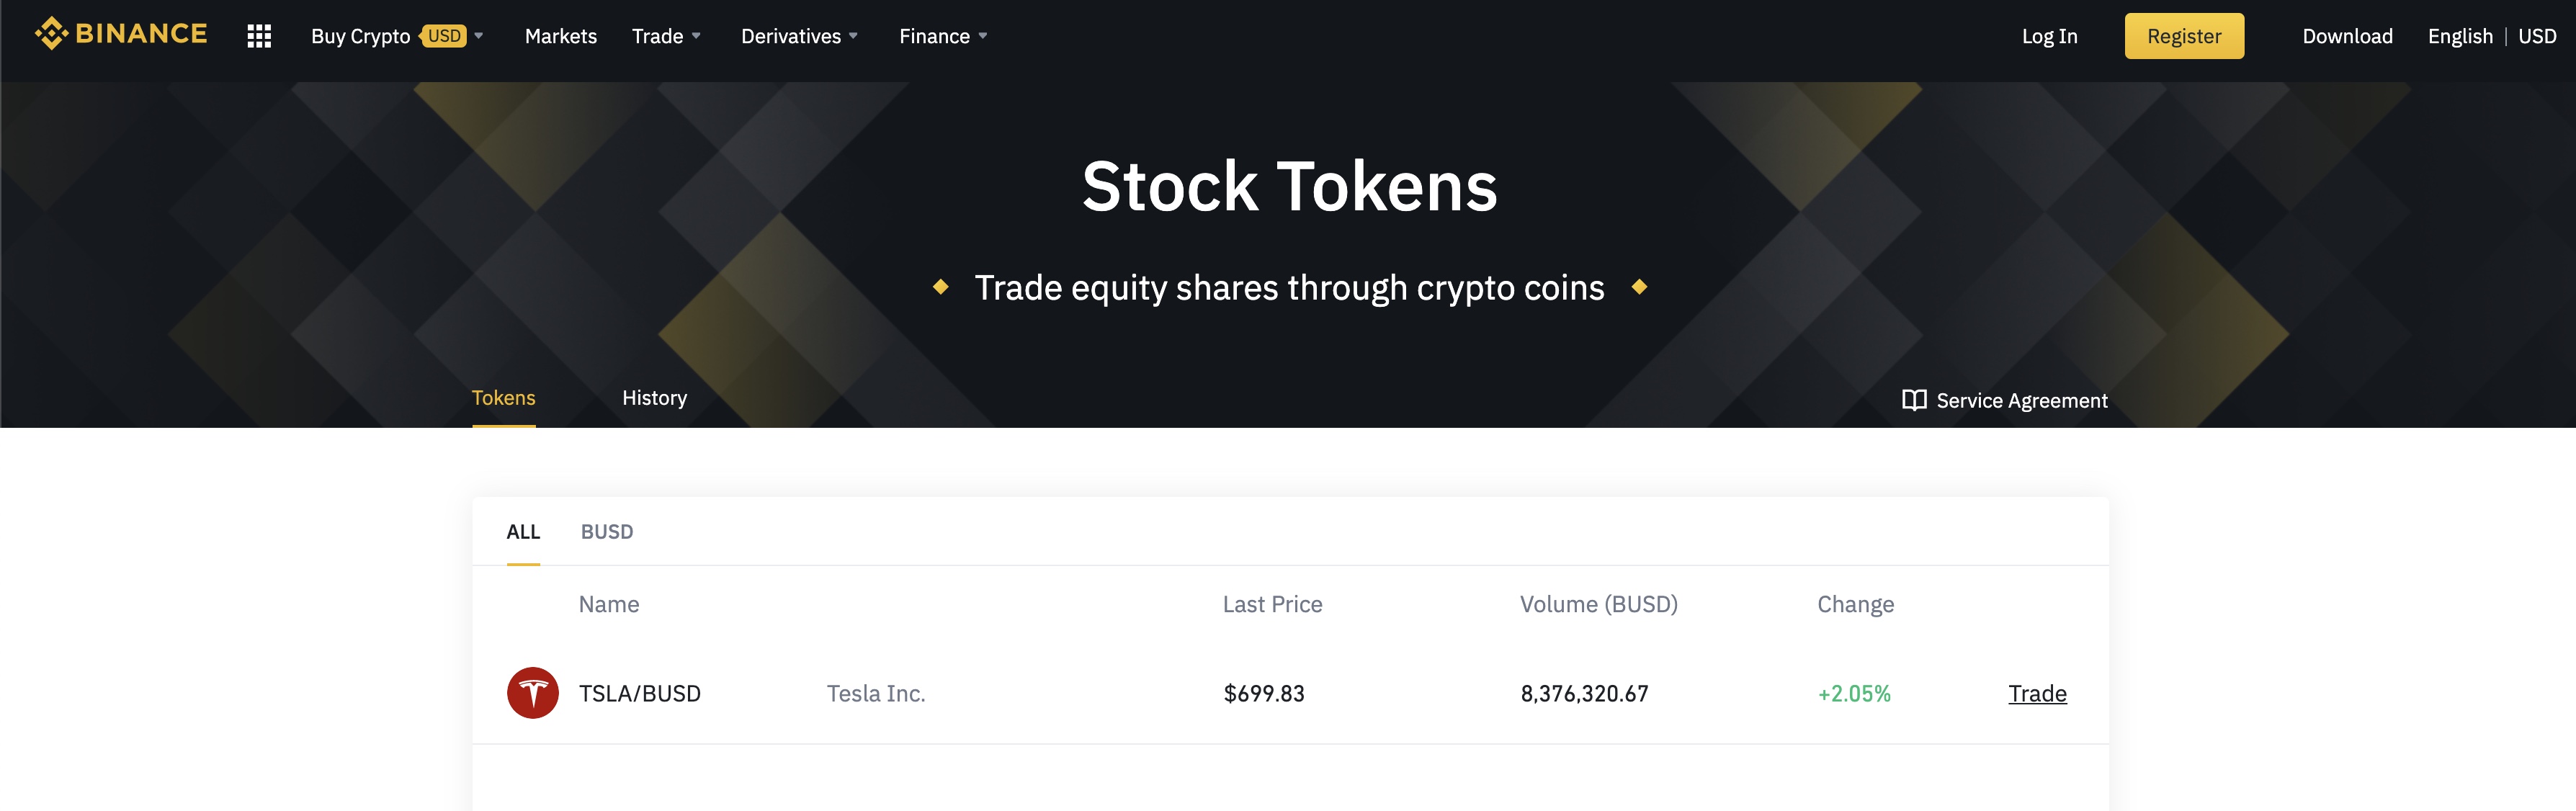 Tesla (TSLA) now has crypto stock token by Binance to buy ...